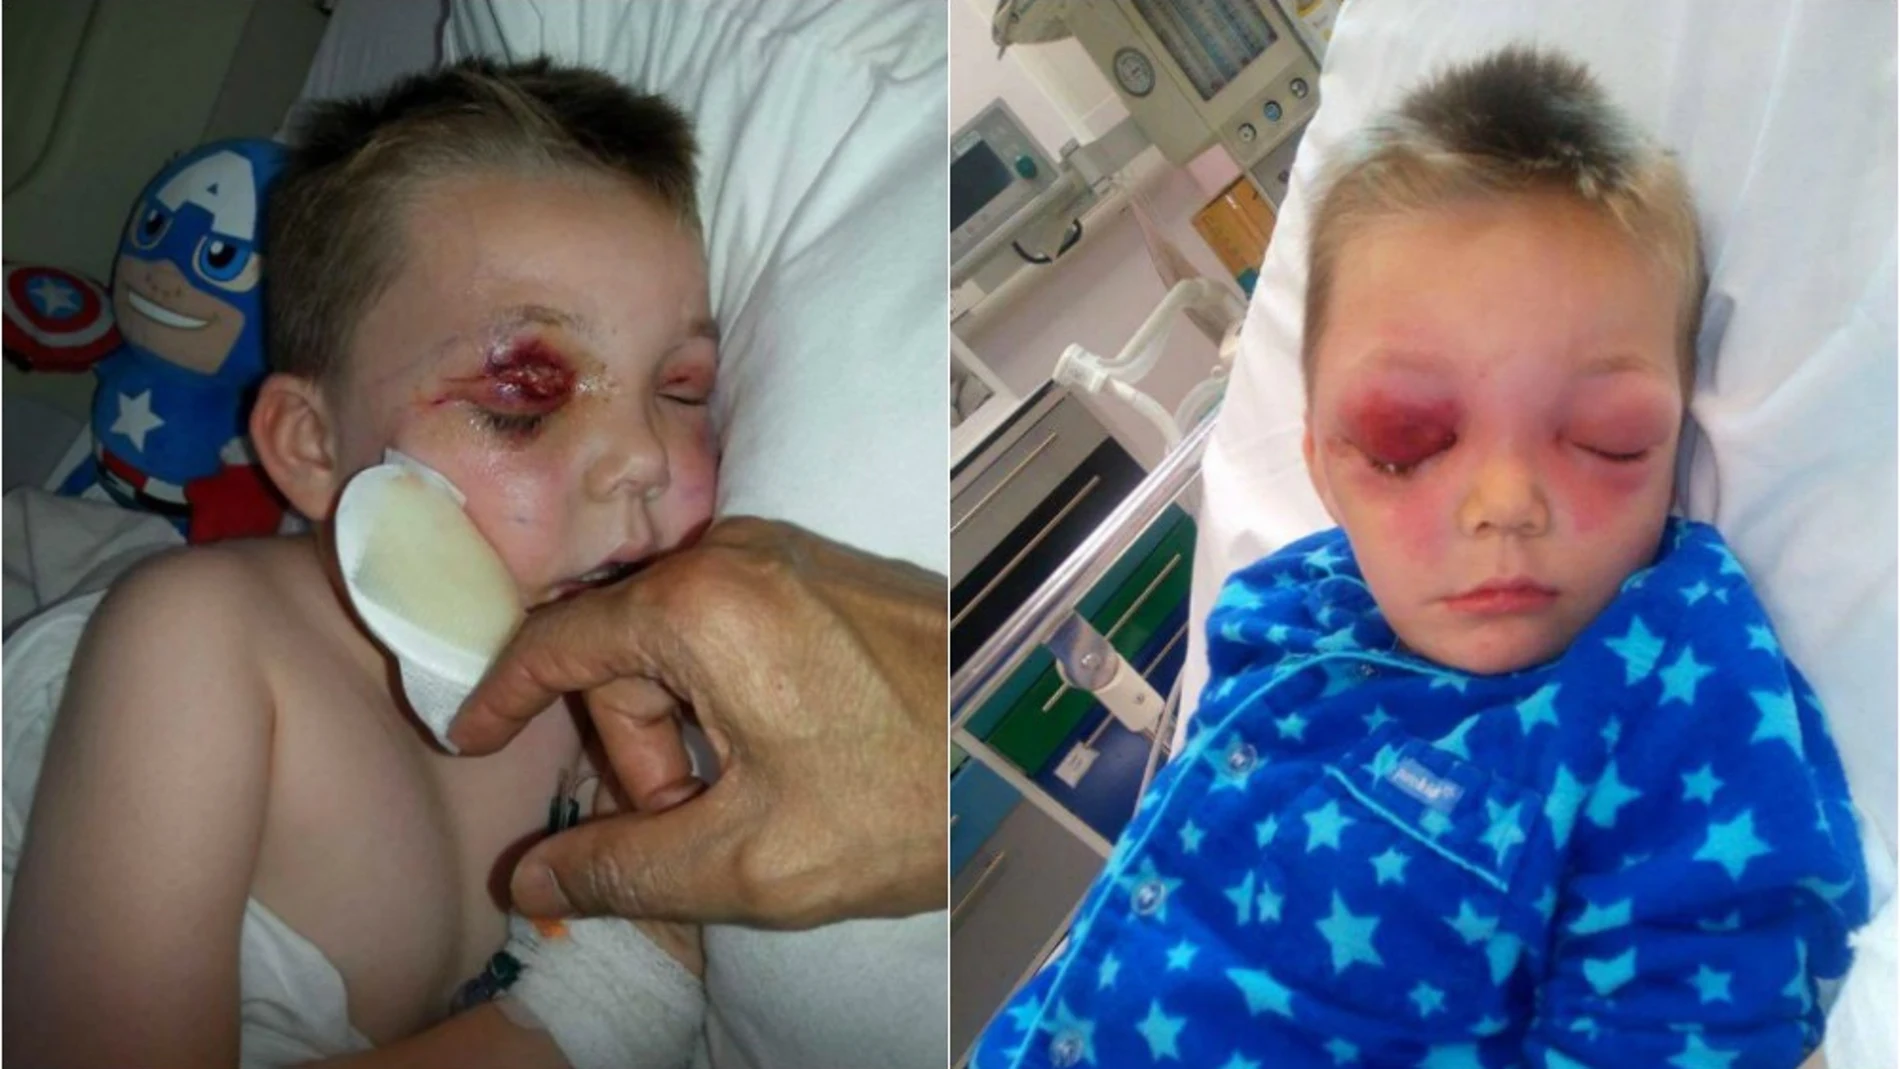 El niño ingresado en el hospital por la picadura de un insecto en el ojo